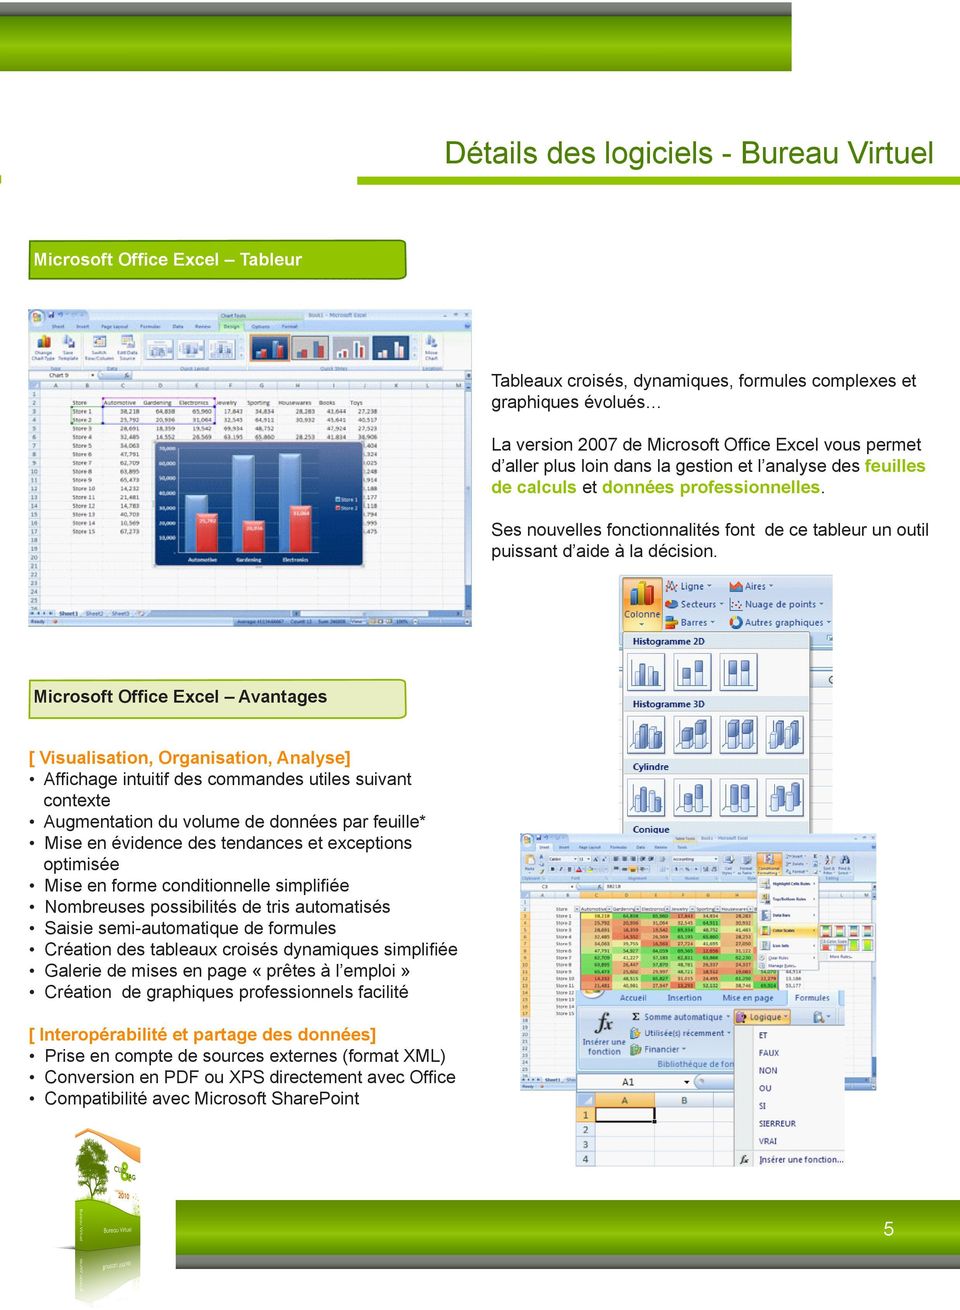 Microsoft Office Excel Avantages [ Visualisation, Organisation, Analyse] Affichage intuitif des commandes utiles suivant contexte Augmentation du volume de données par feuille* Mise en évidence des